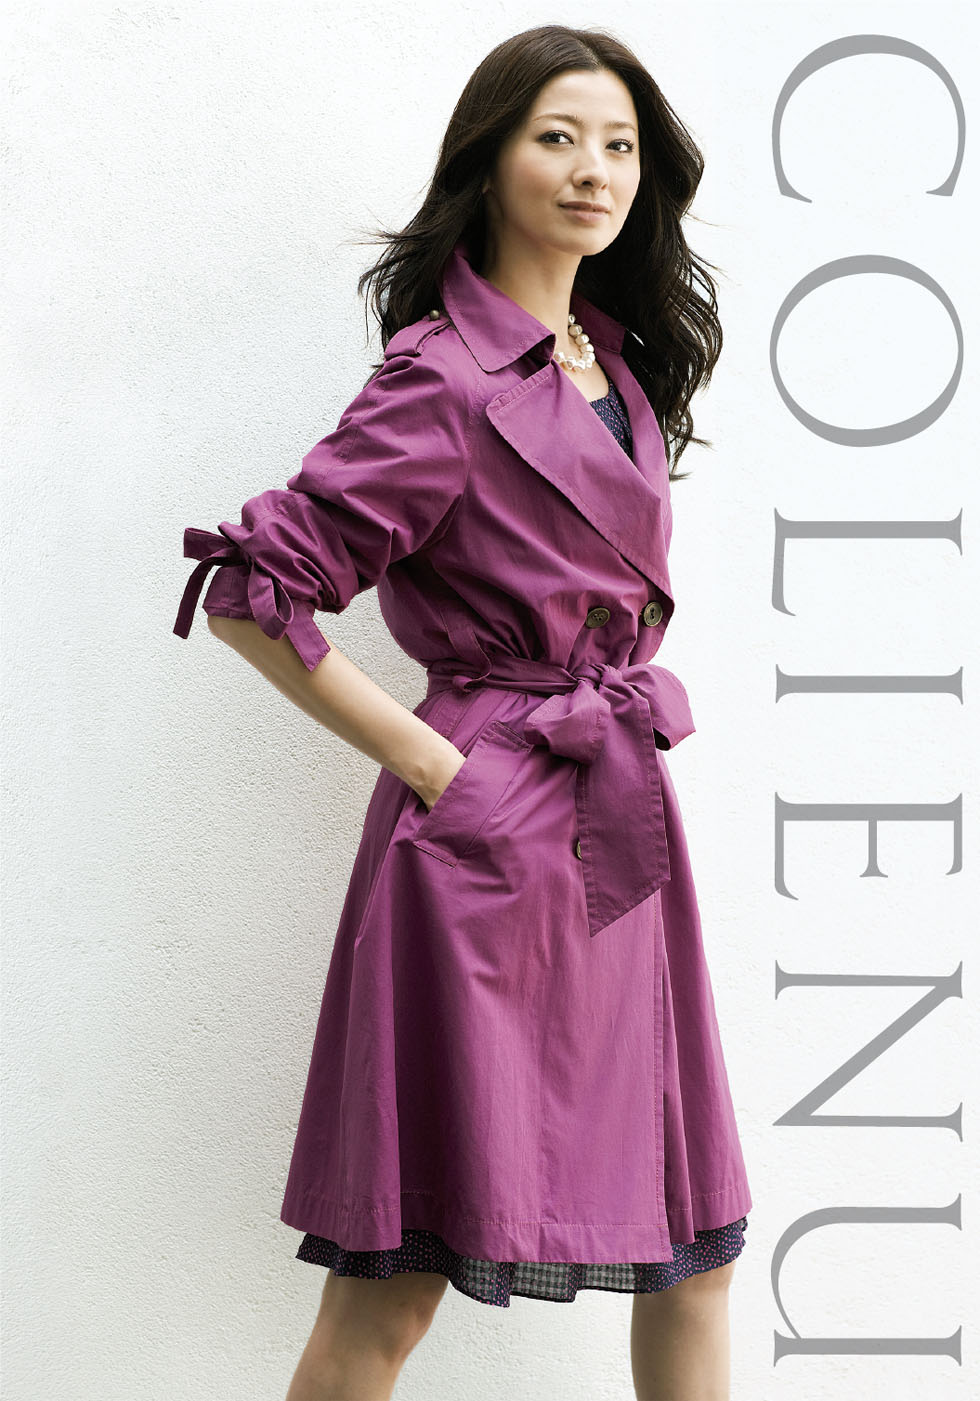 株式会社東京スタイル「COLIENU」のファッションカタログデザイン